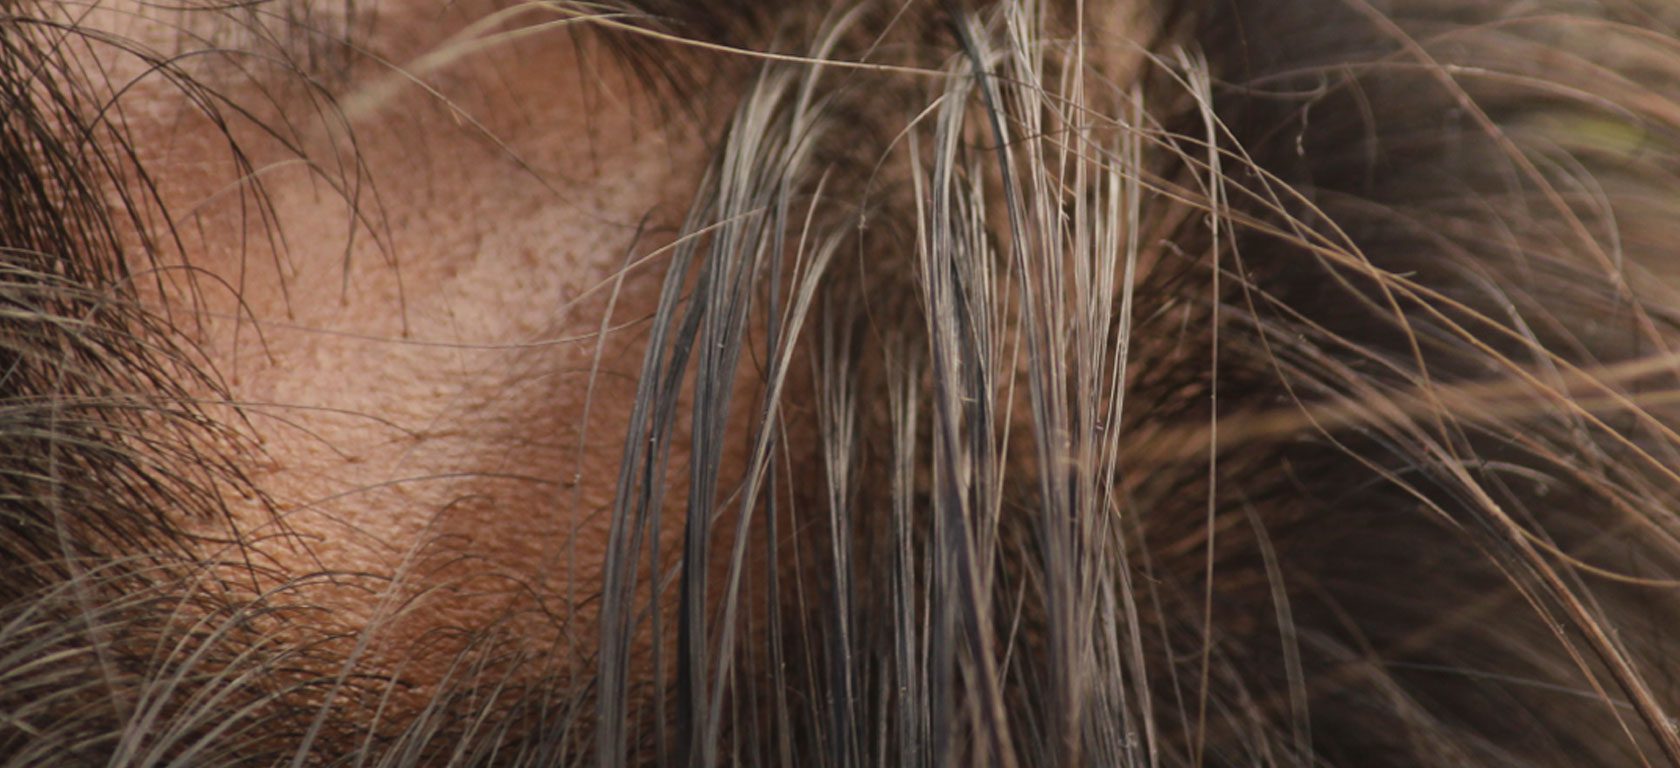 Imagen post tratamientos alopecia areata